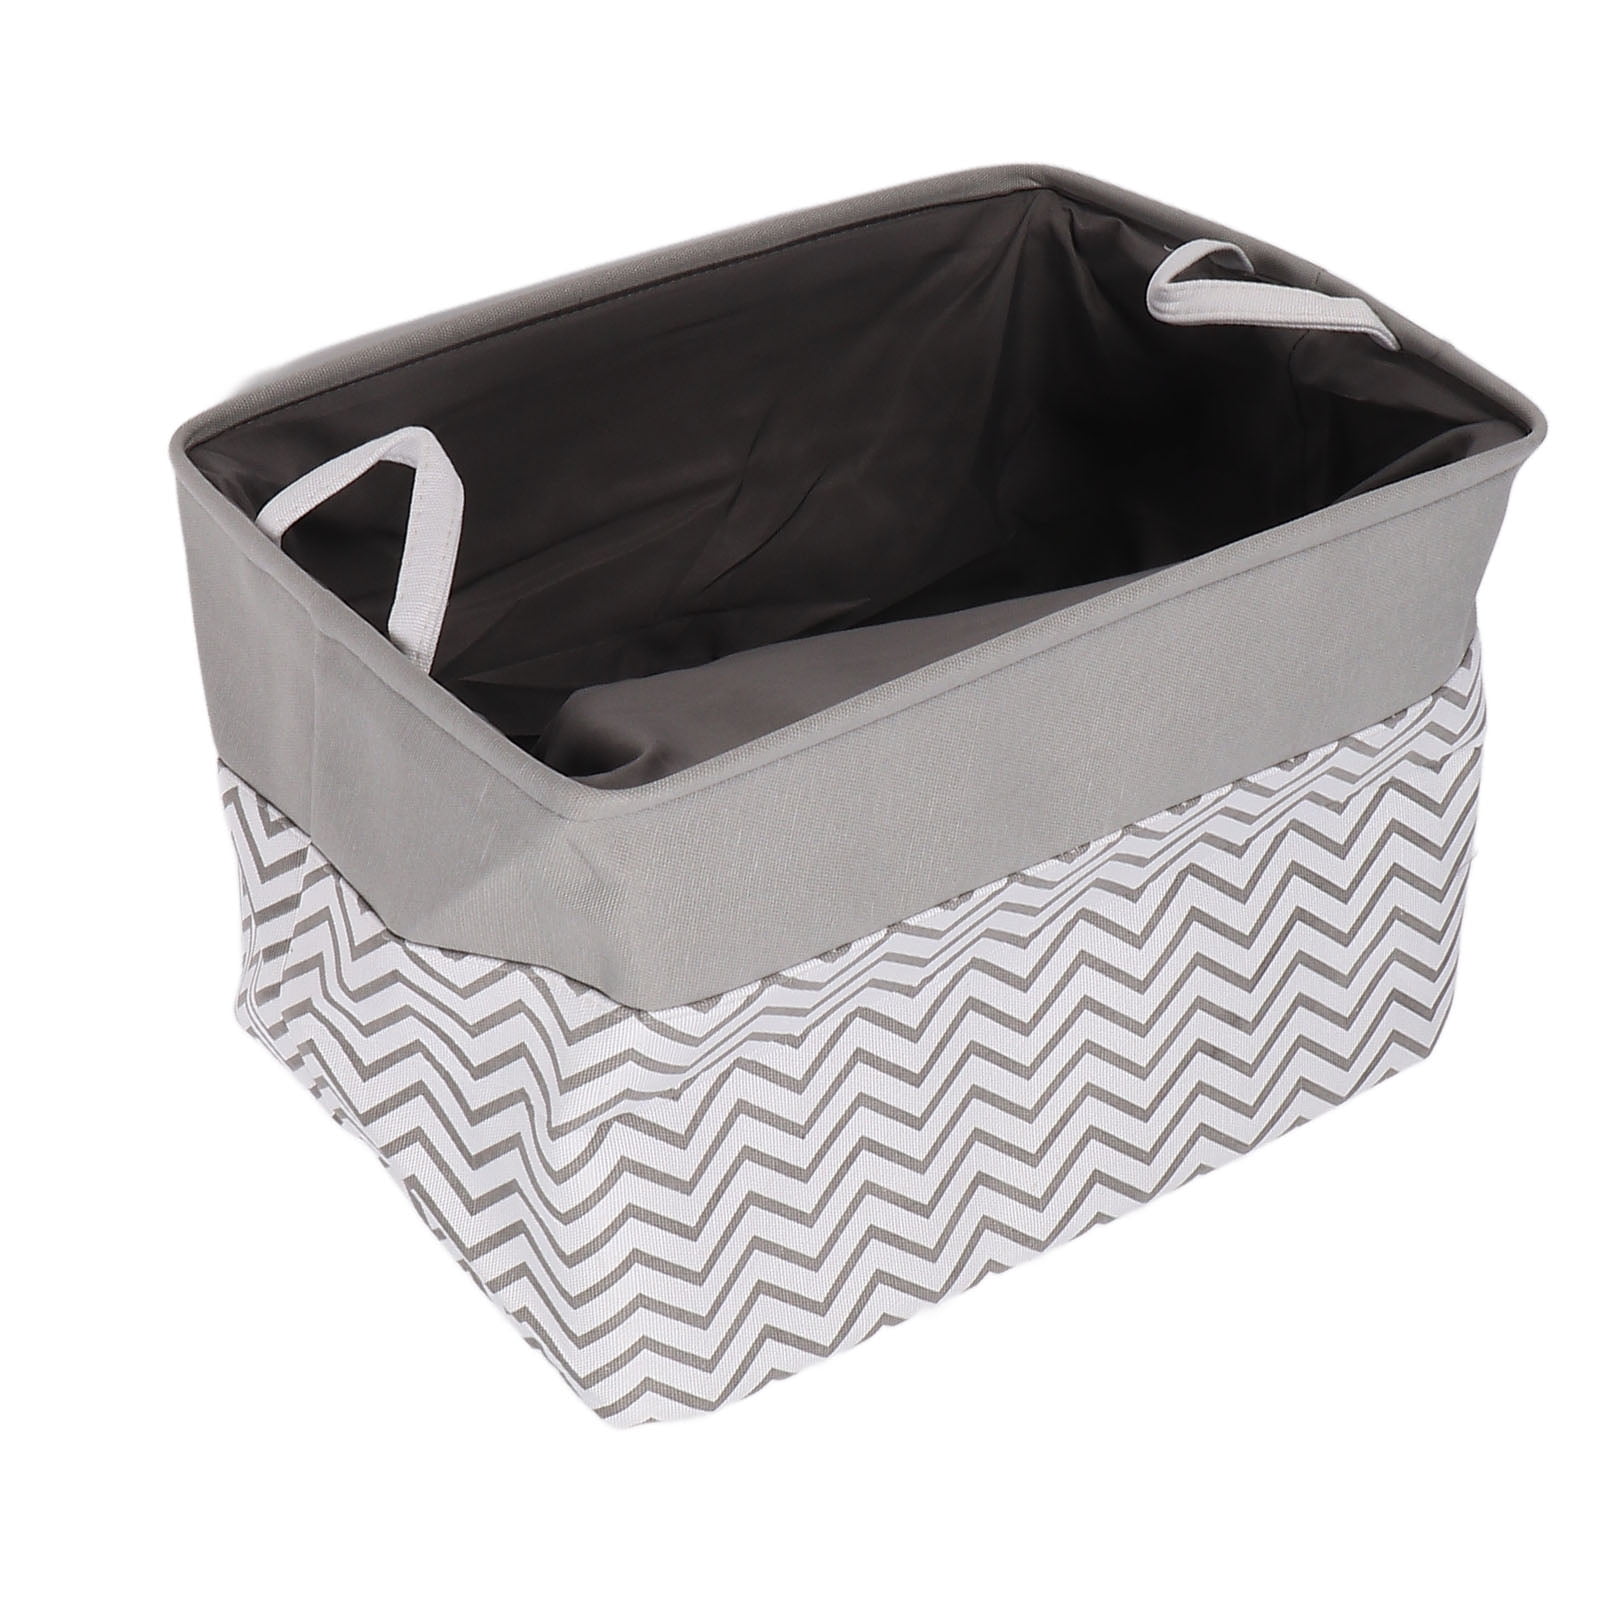 Slim Laundry Basket w/ Wheels Foldable Waterproof Washing Bin Hamper Home Hotel 